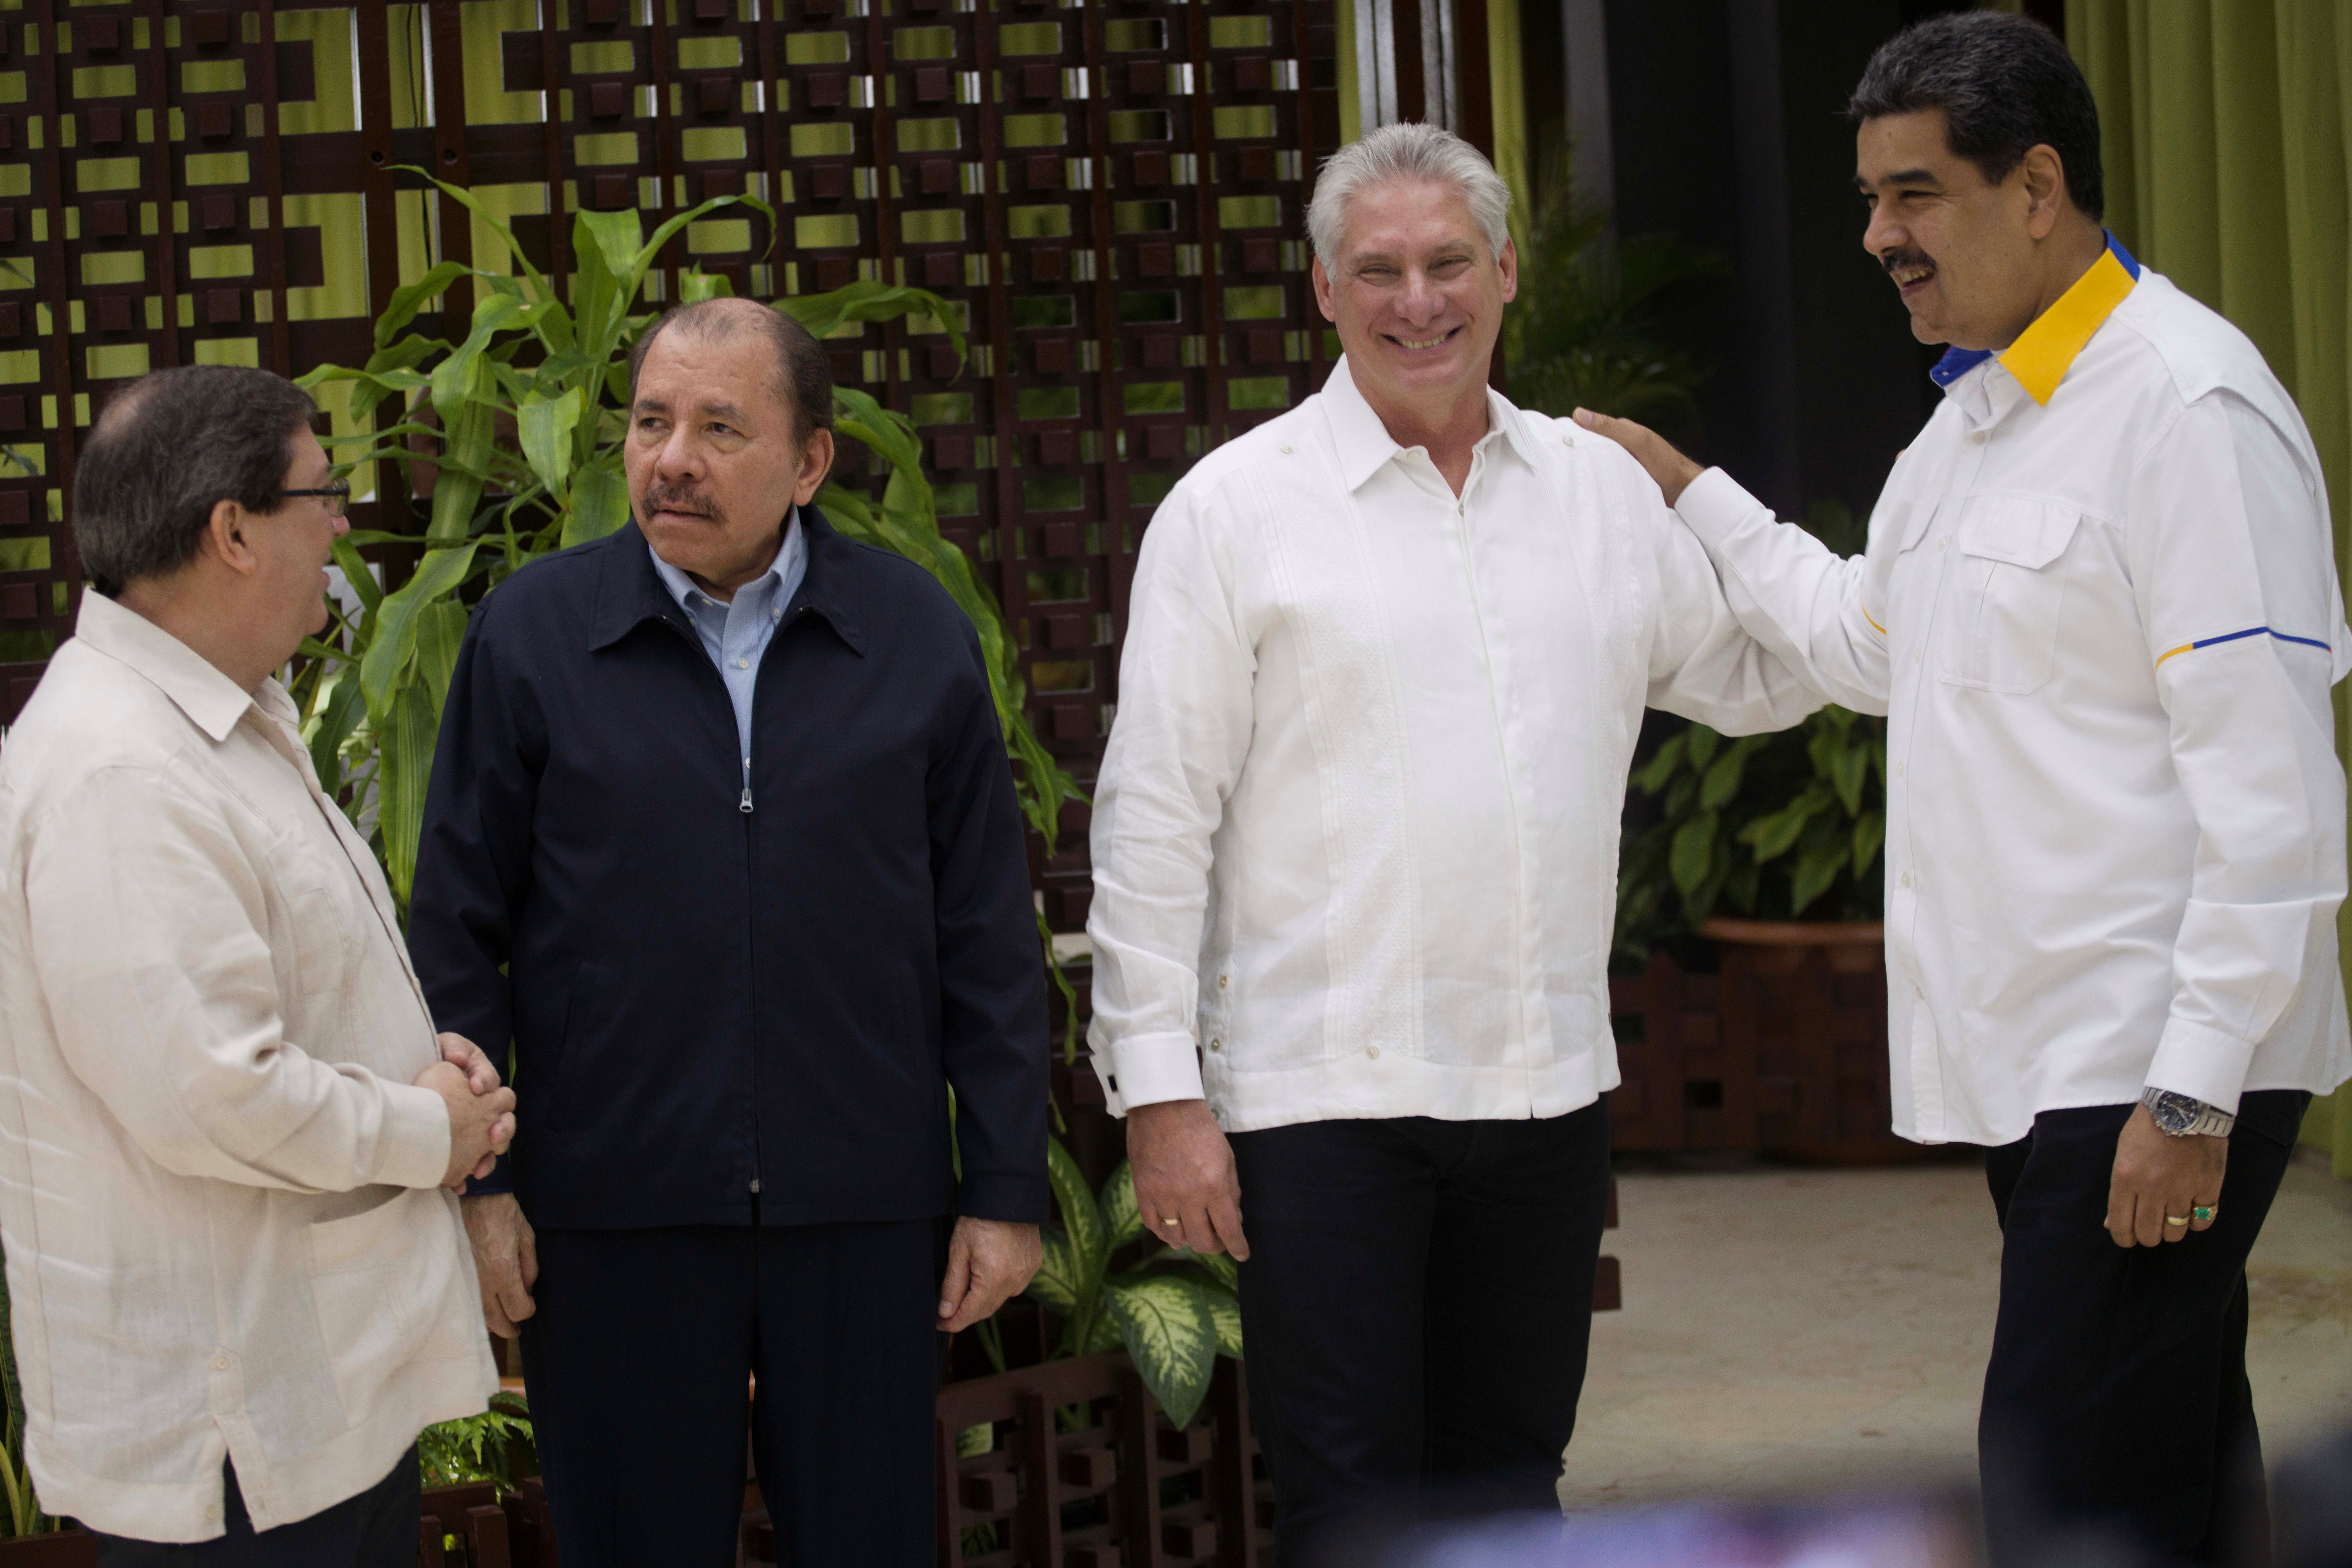 Las dictaduras de Venezuela, Cuba y Nicaragua son objeto de miles de denuncias por violaciones a los derechos humanos (Ramon Espinosa/Pool via REUTERS)